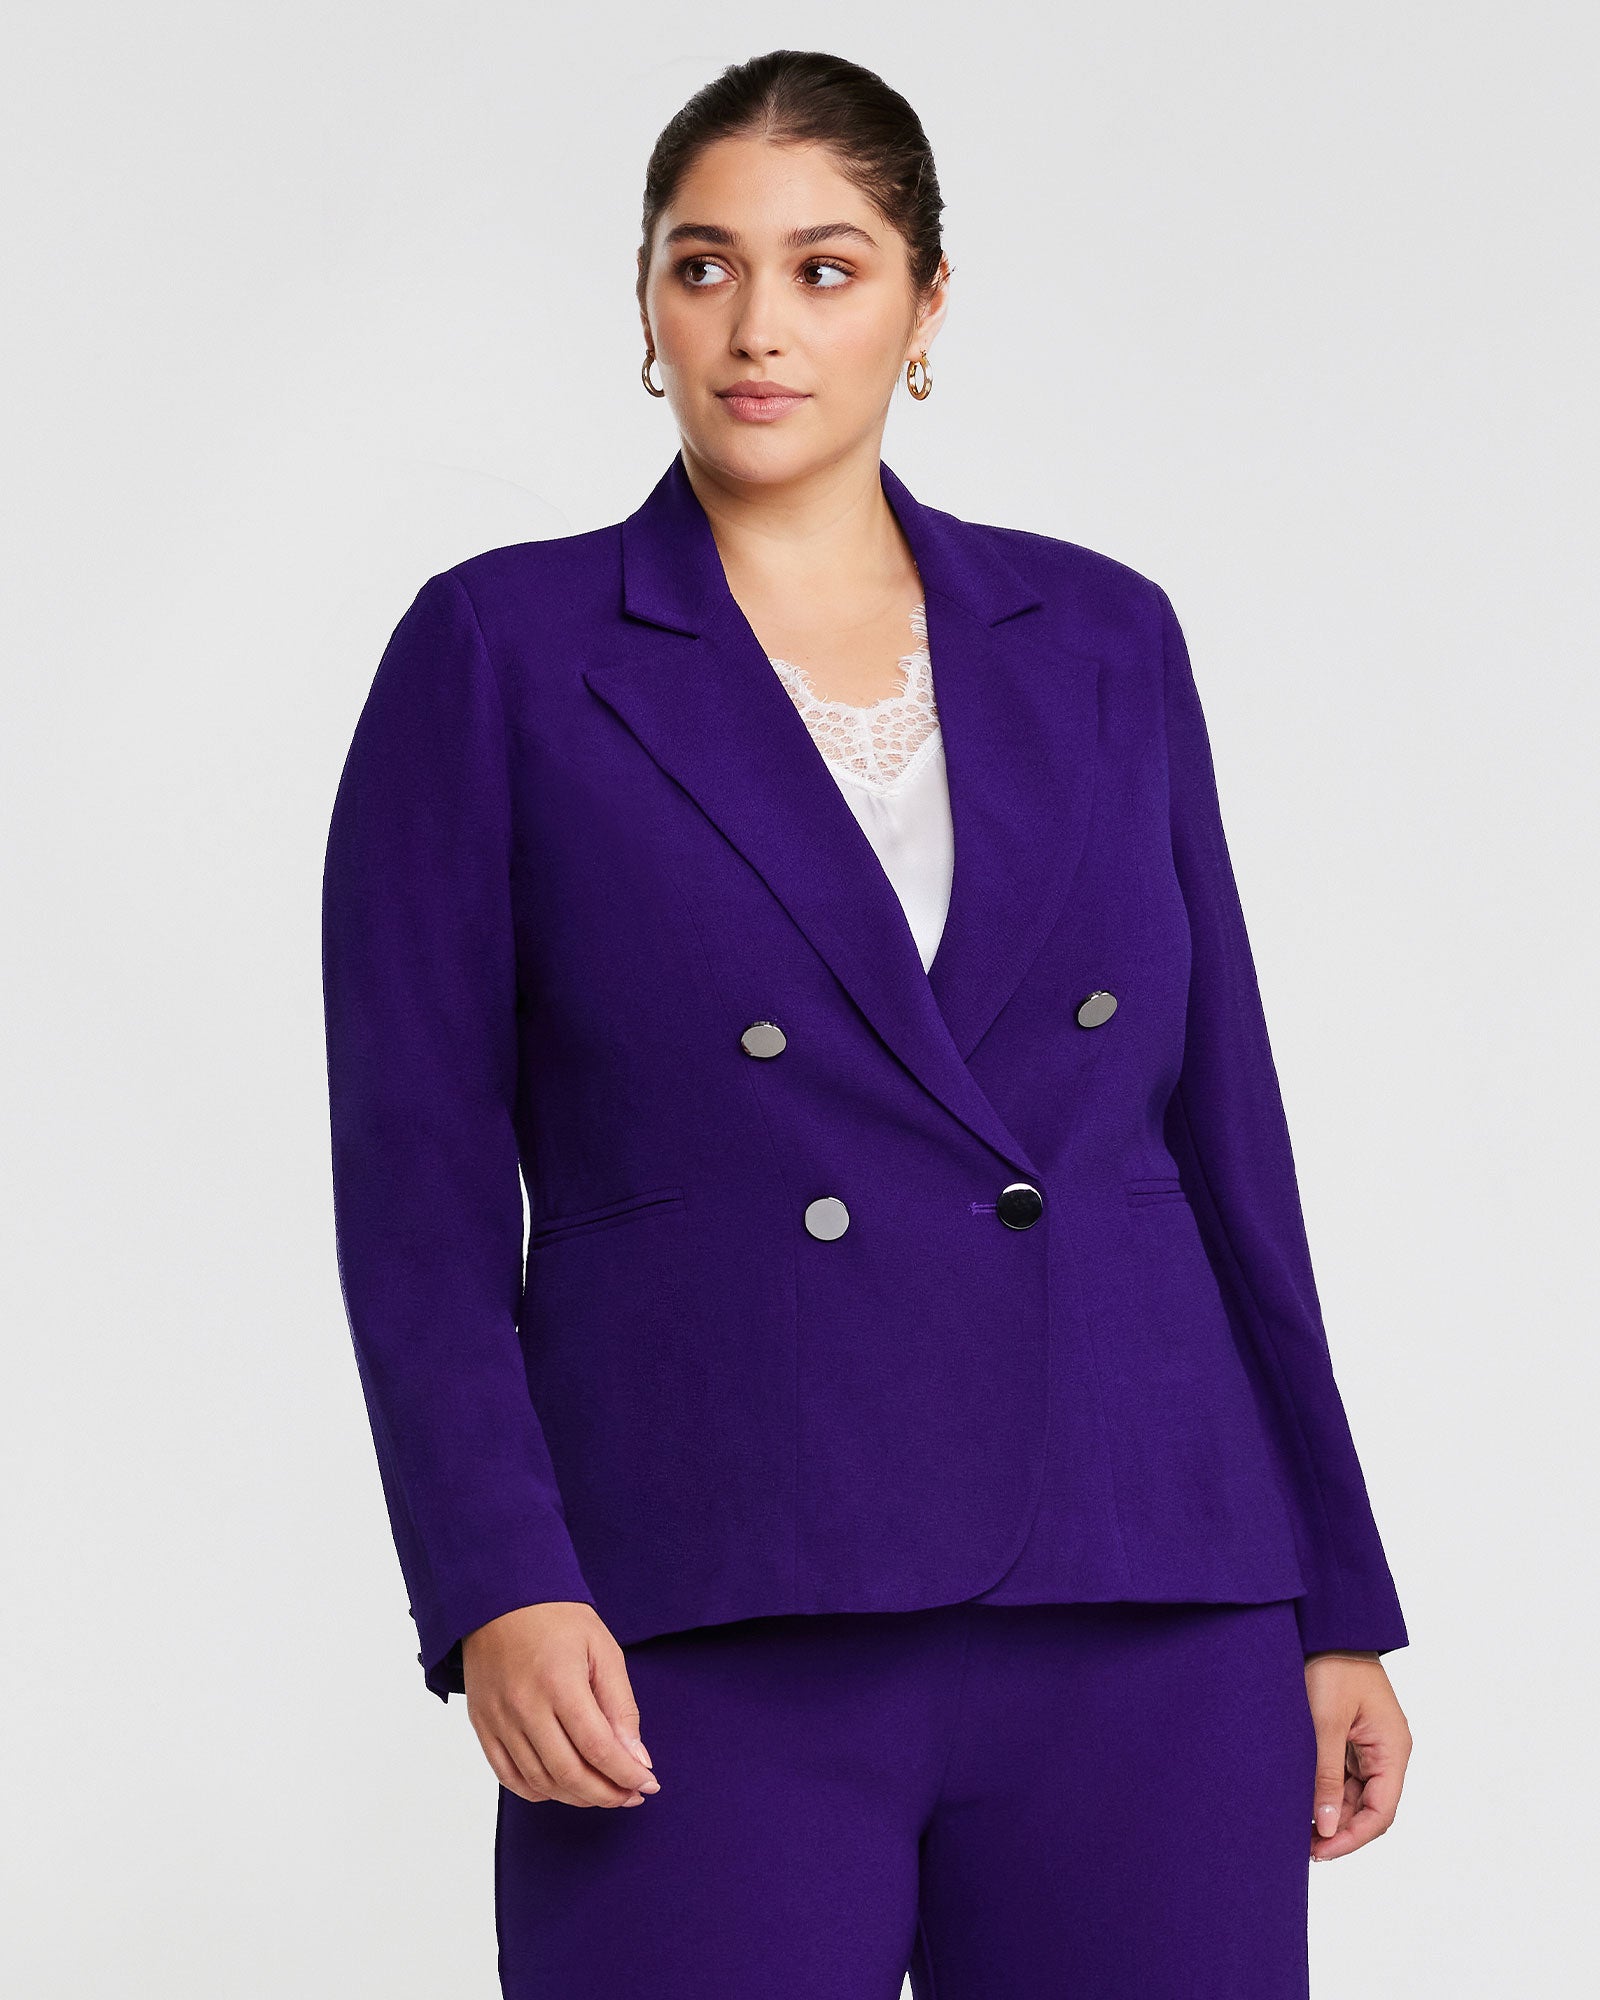 A woman wearing a Clever Blazer Jacket in Purple.